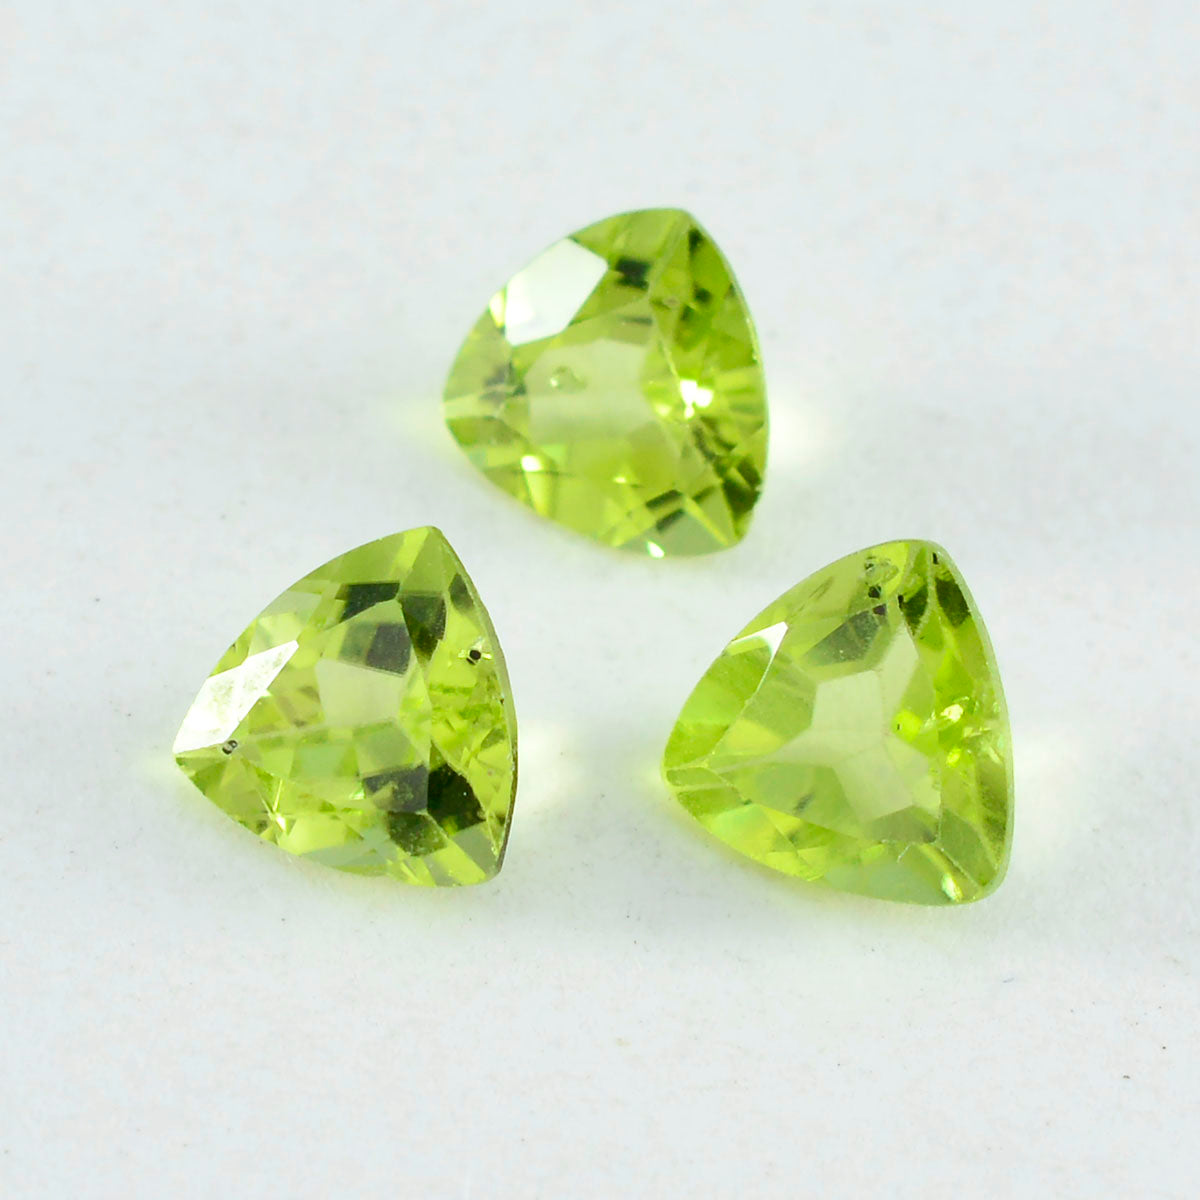 riyogems 1 pieza de peridoto verde genuino facetado de 9x9 mm con forma de billón, una piedra preciosa suelta de calidad